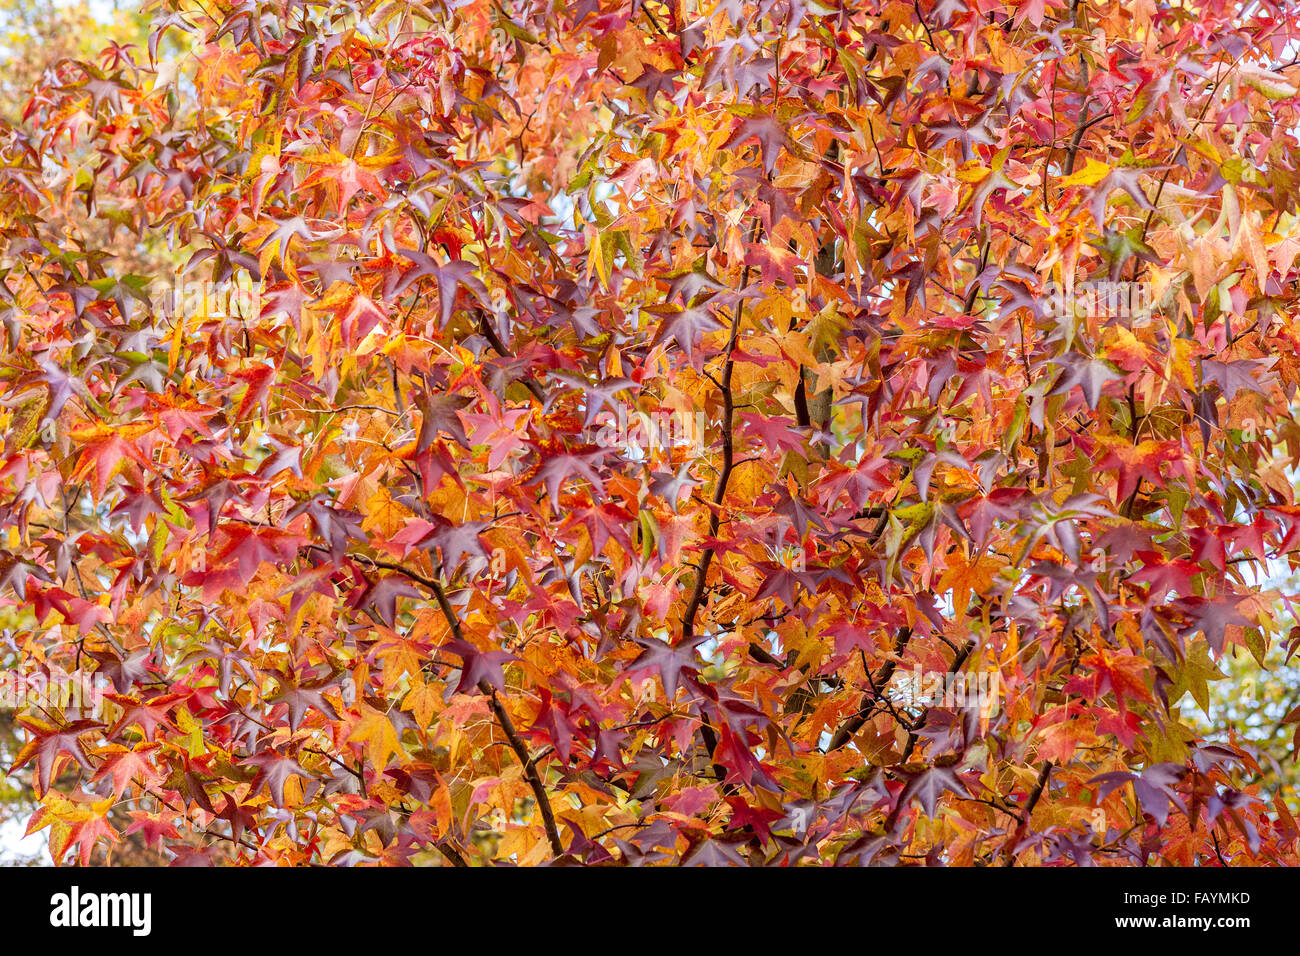 Luminoso multicolor de hojas de otoño de la dulce gum tree Liquidambar styraciflua Foto de stock